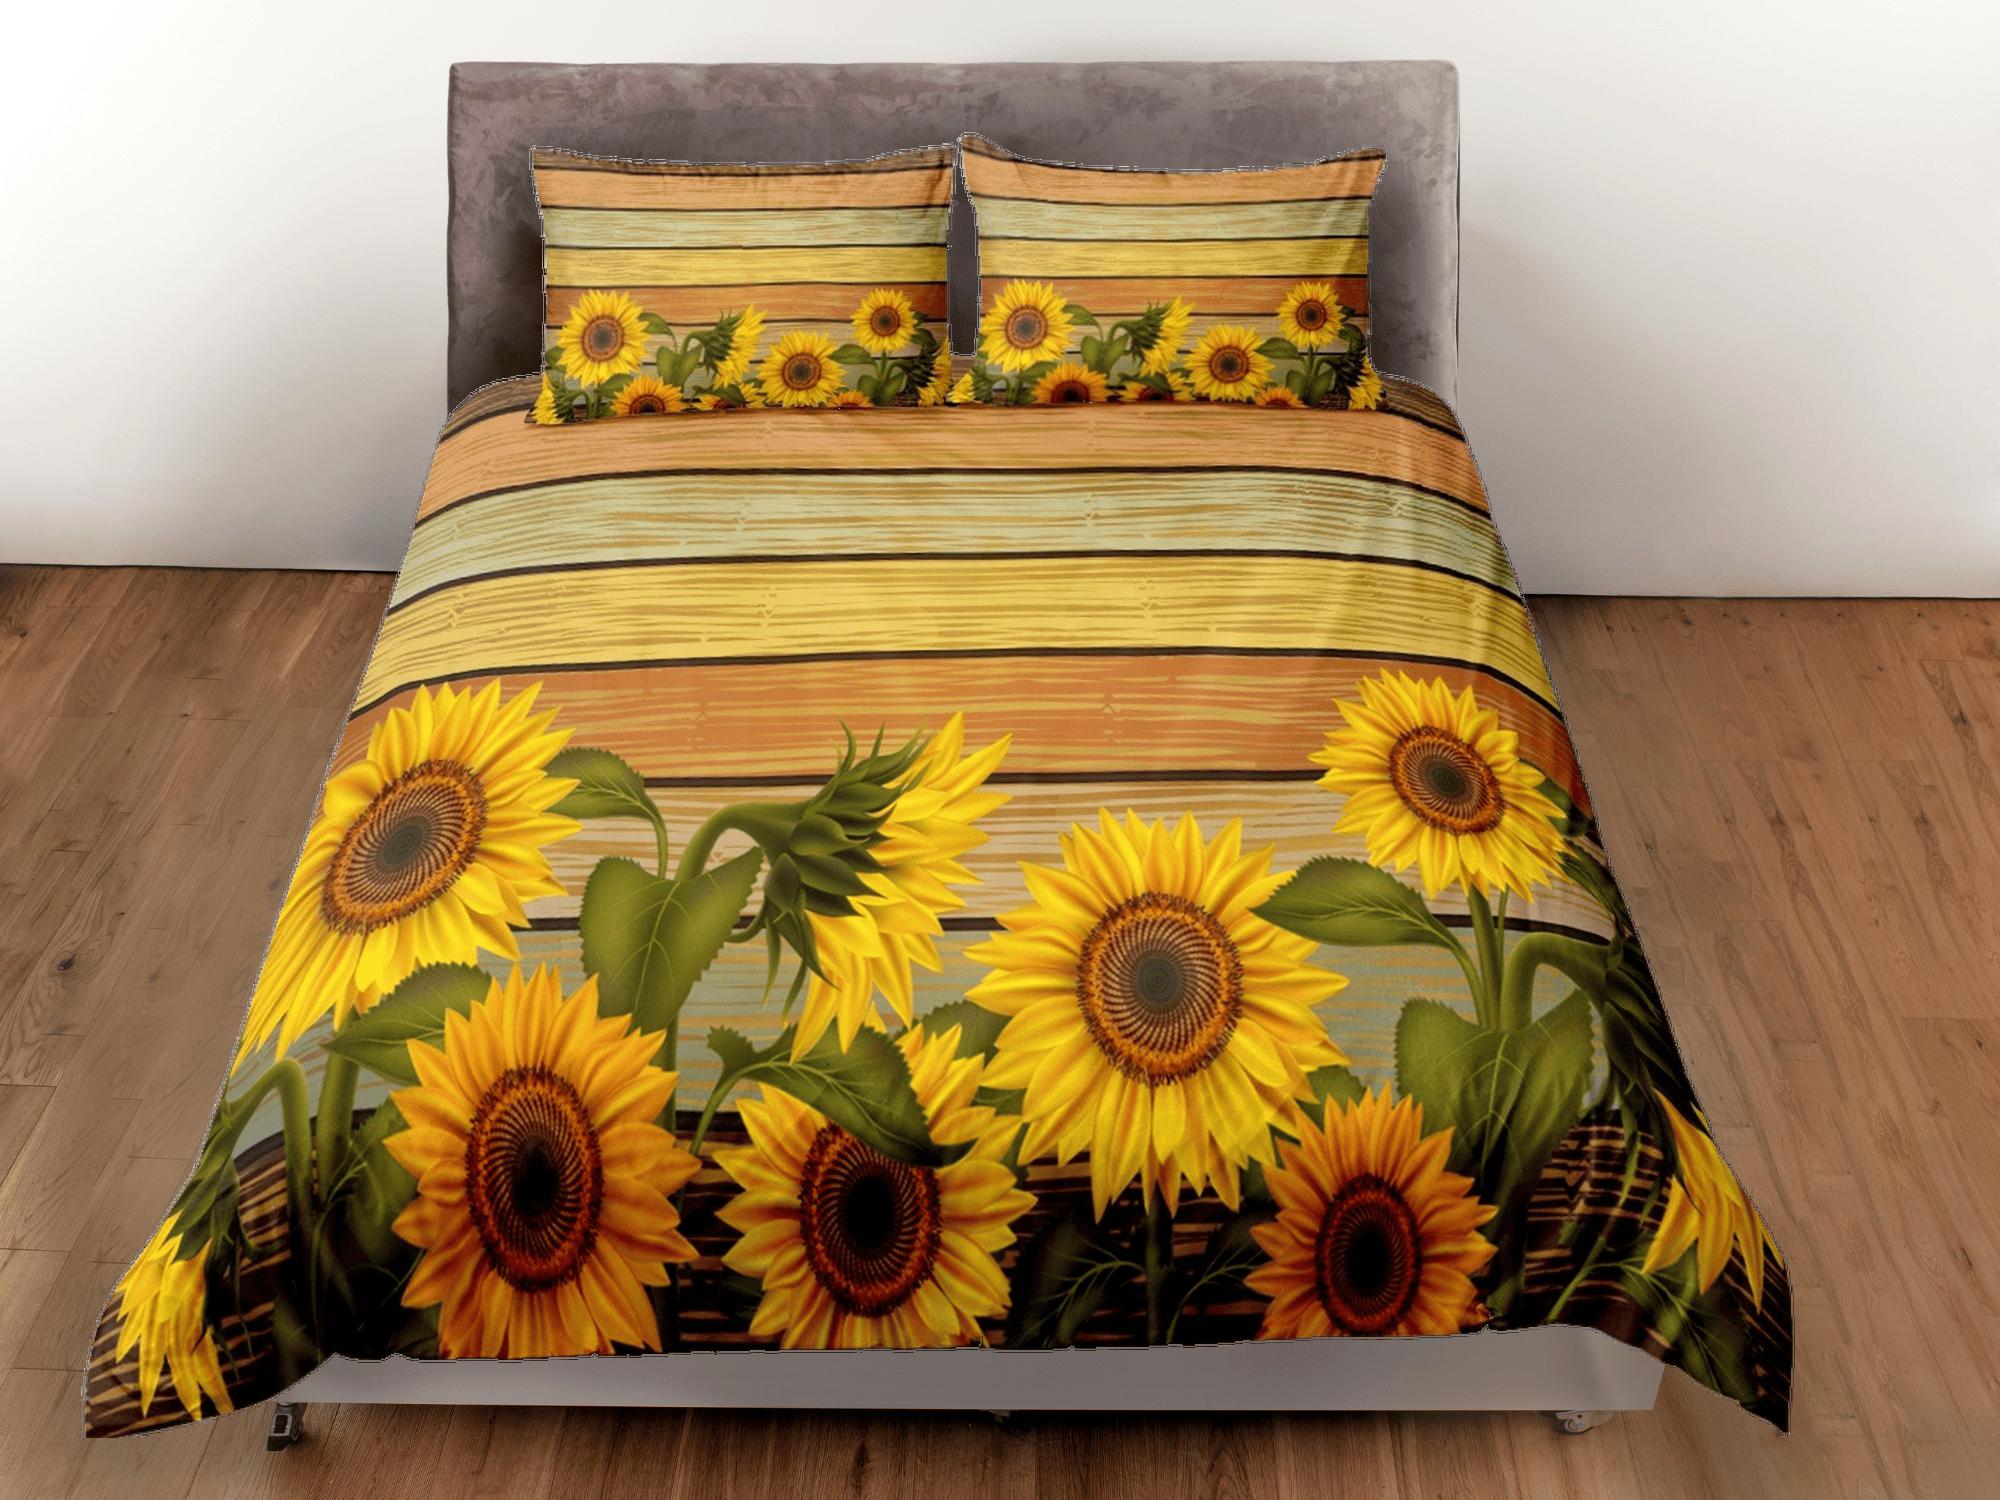 daintyduvet Sunflower floral bedding, duvet cover queen, king, boho duvet, designer bedding, aesthetic bedding, maximalist decor, full size bedding